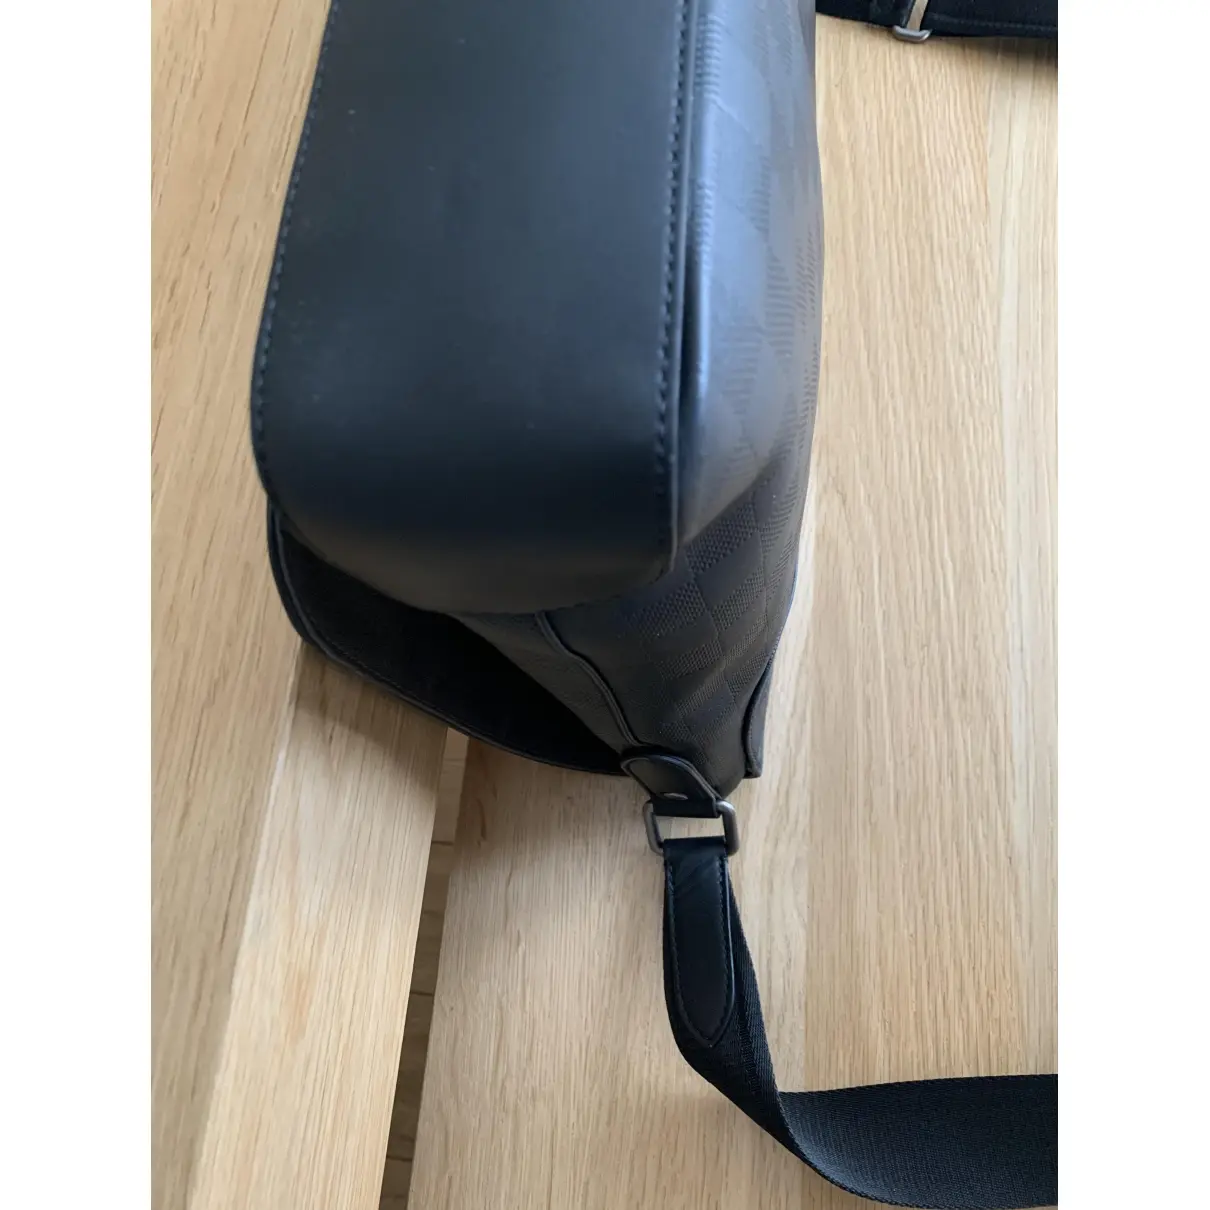 District leather satchel Louis Vuitton